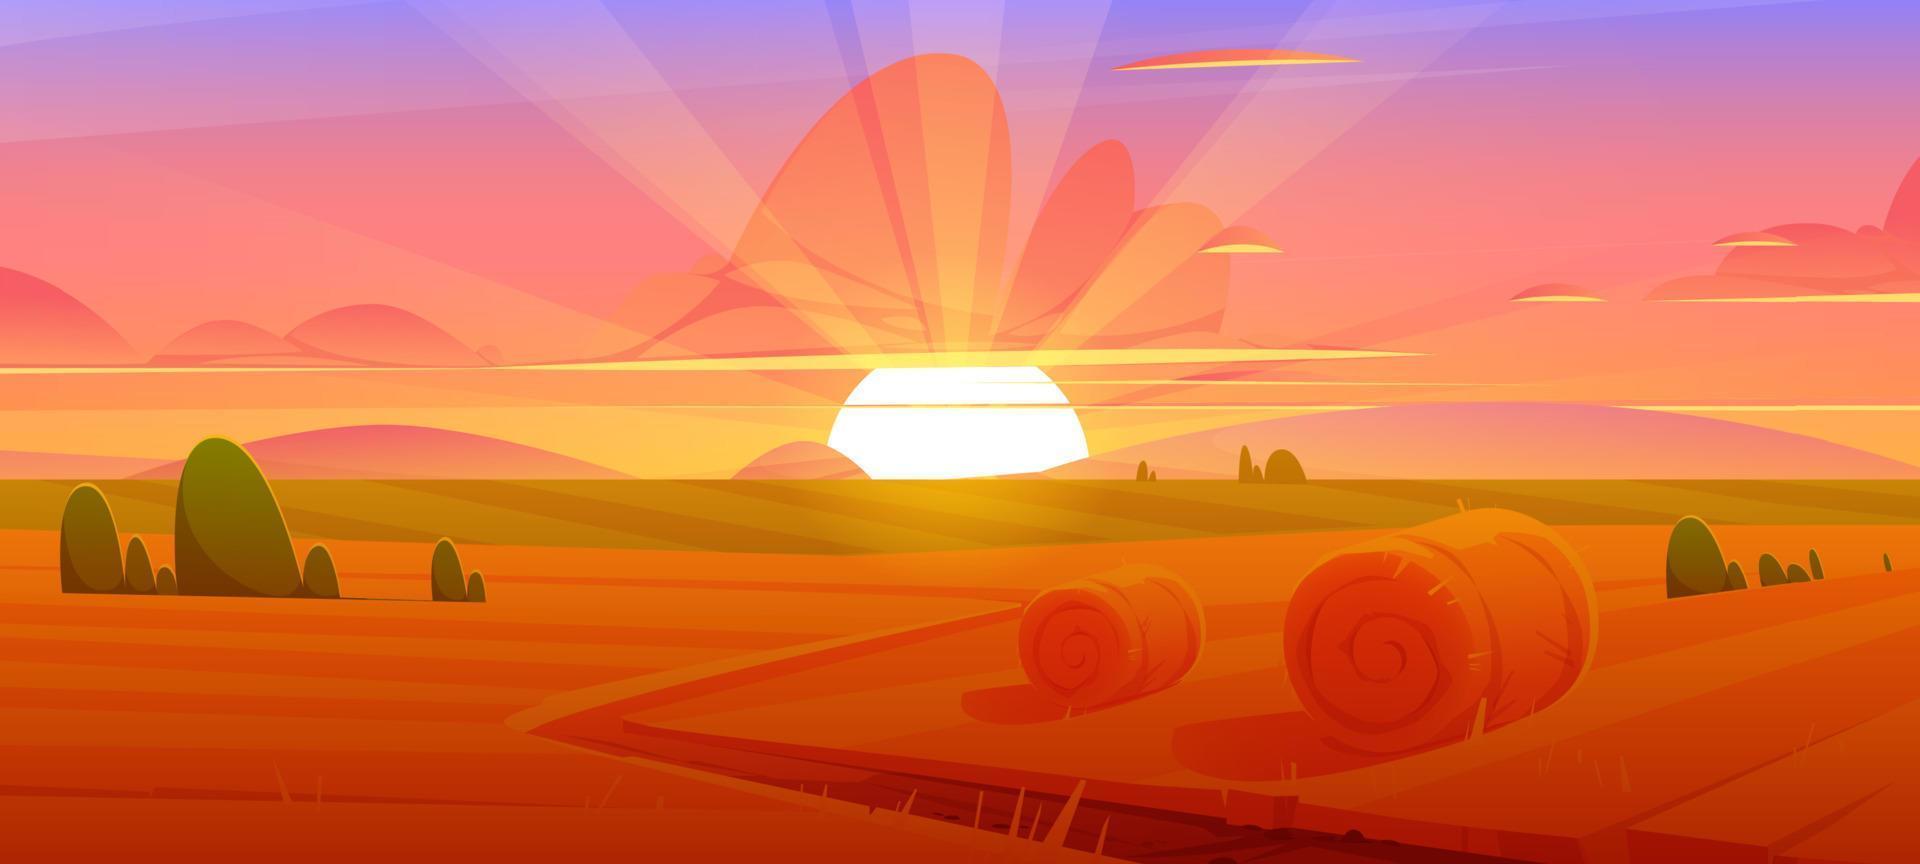 paysage rural avec des balles de foin sur le terrain au coucher du soleil vecteur